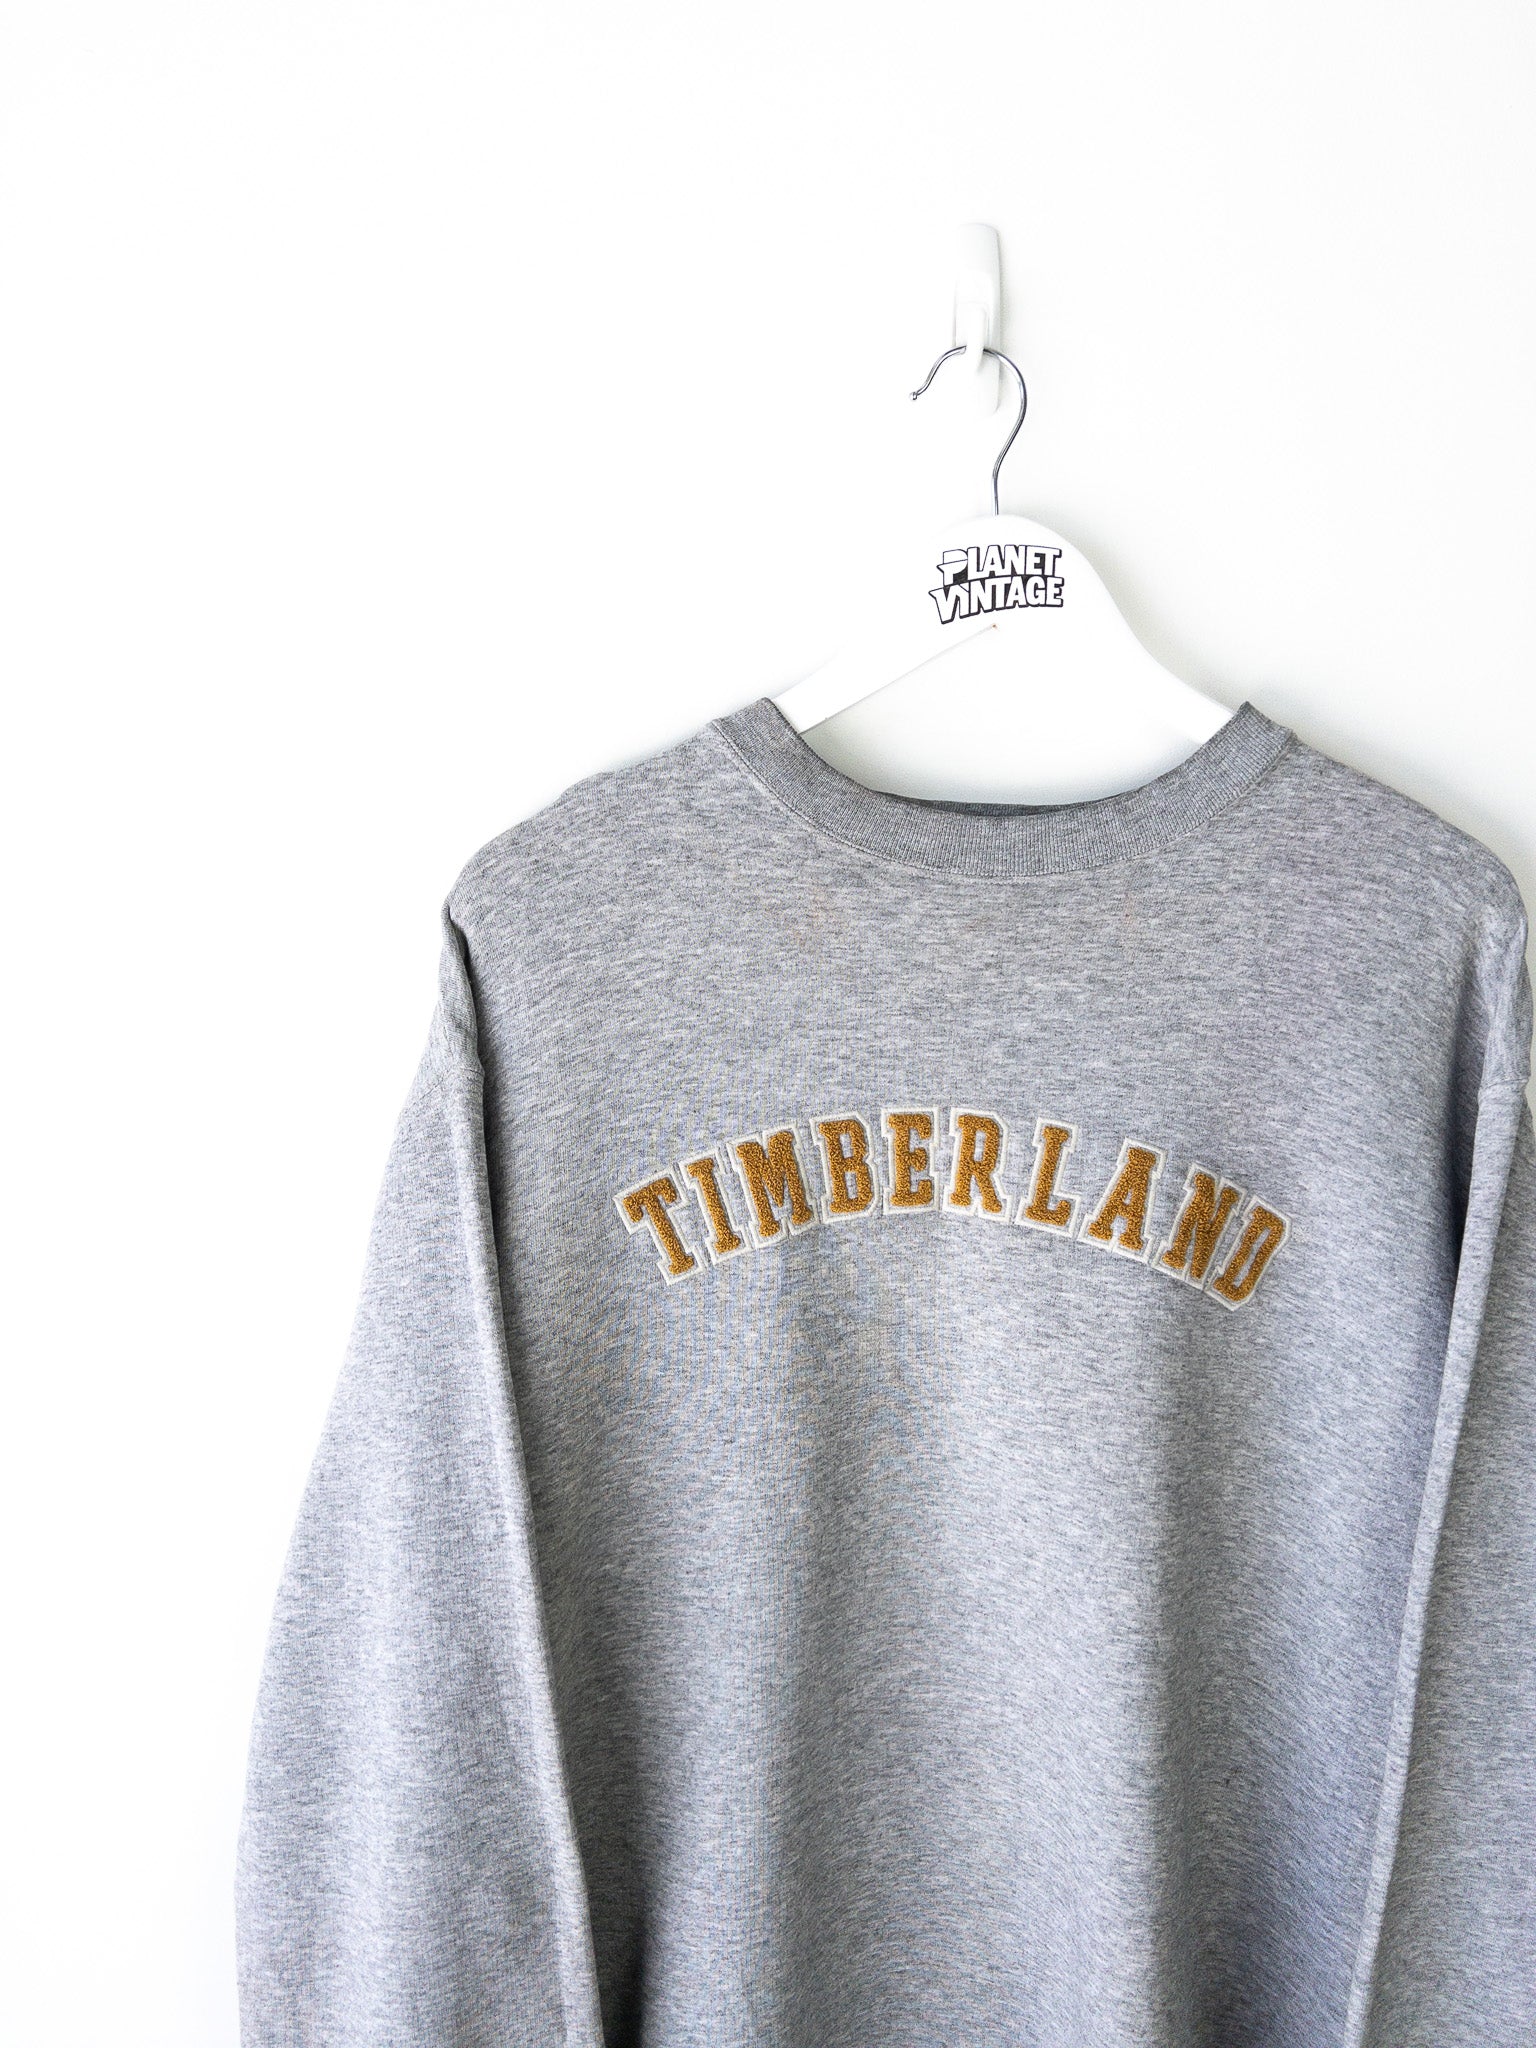 Vintage Timberland Sweatshirt (L)